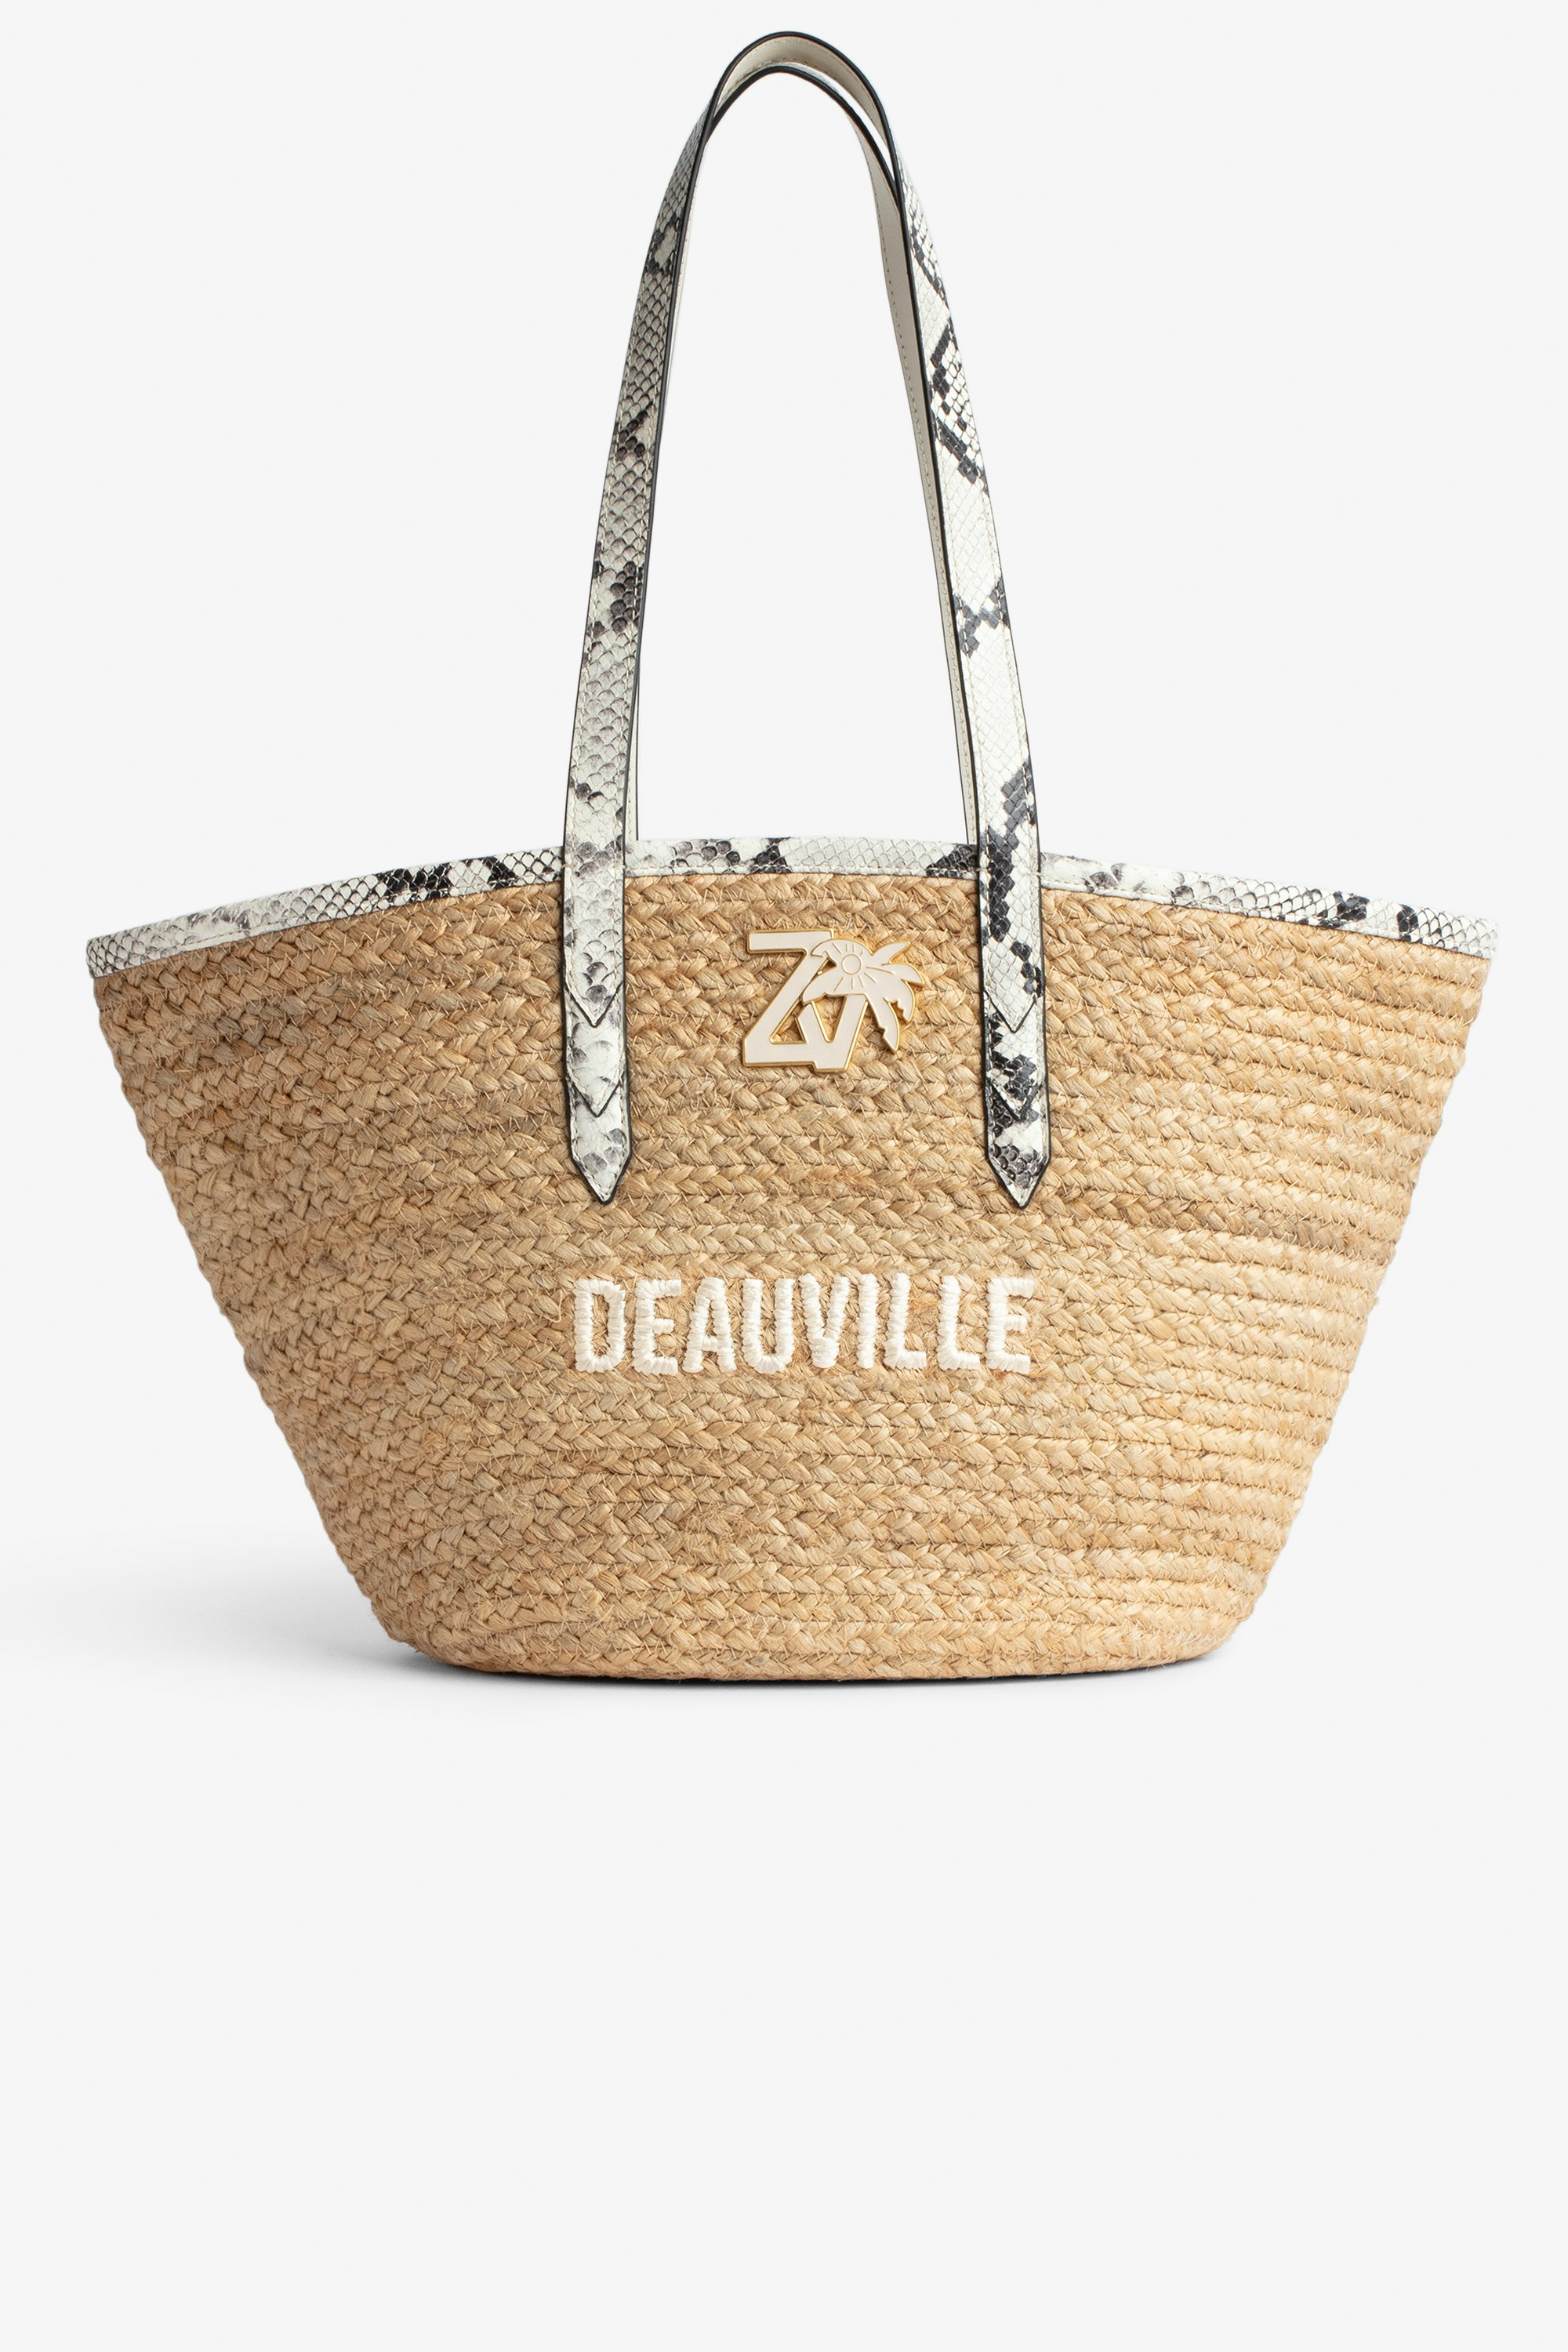 Tasche Le Beach Bag - Damen-Strohtasche mit Henkeln aus ecrufarbenem Leder in Python-Optik, „Deauville“-Stickerei und ZV-Charm